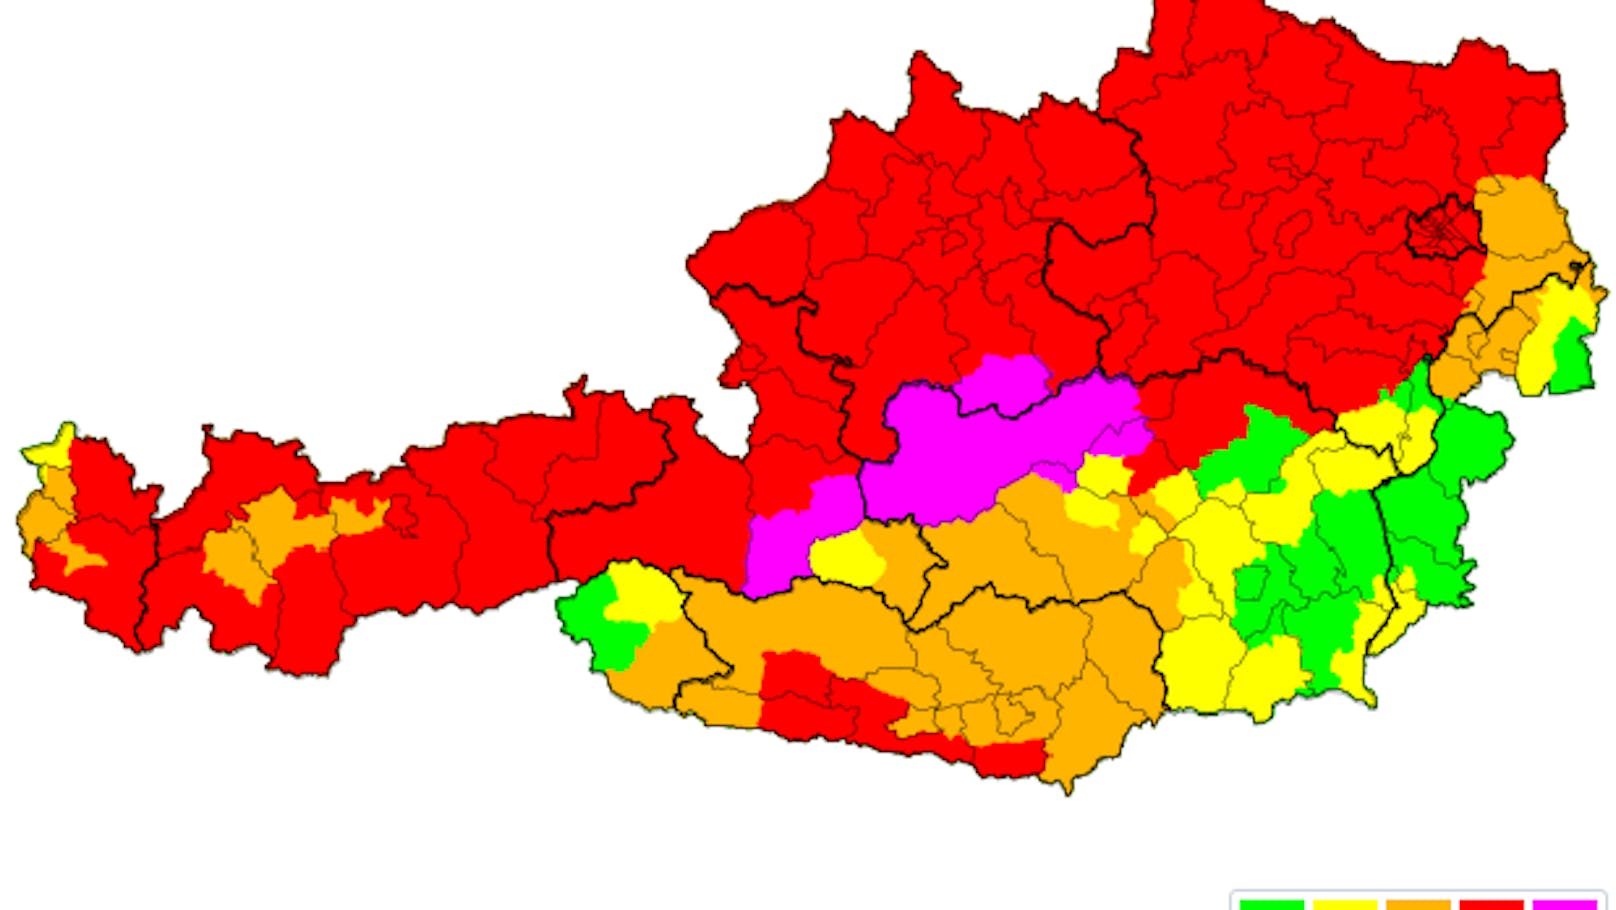 Die Unwettergefahr ist derzeit groß, wie die lila markierten Bereiche zeigen. Vor allem in der Steiermark und Salzburg